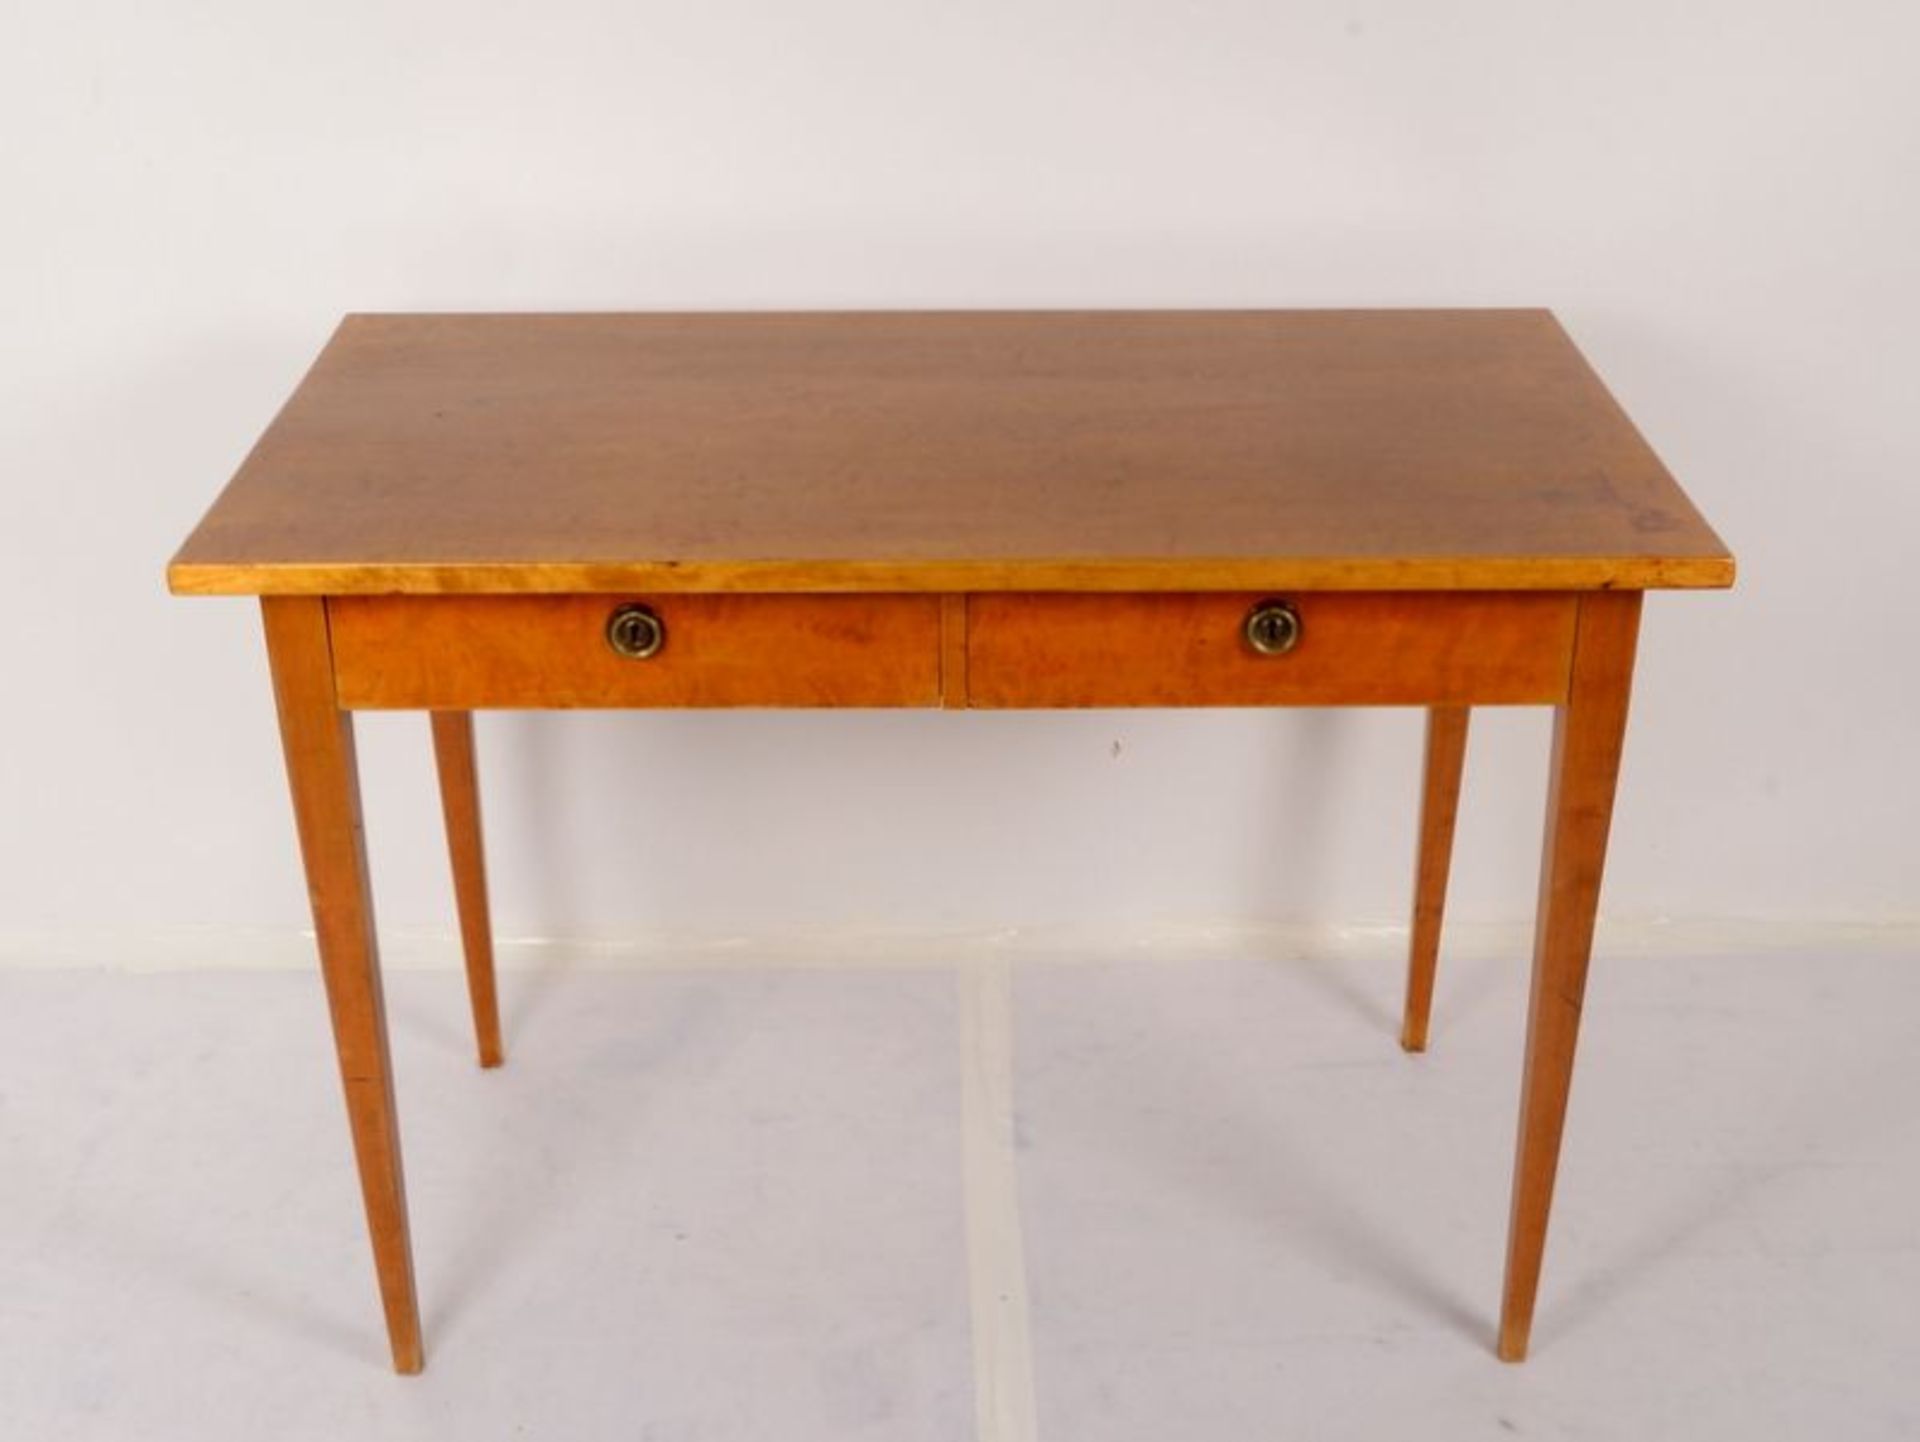 Schreibtisch, Birke, rechteckige Schreibplatte oberhalb 2x Schüben, Tisch auf konischen Beinen;